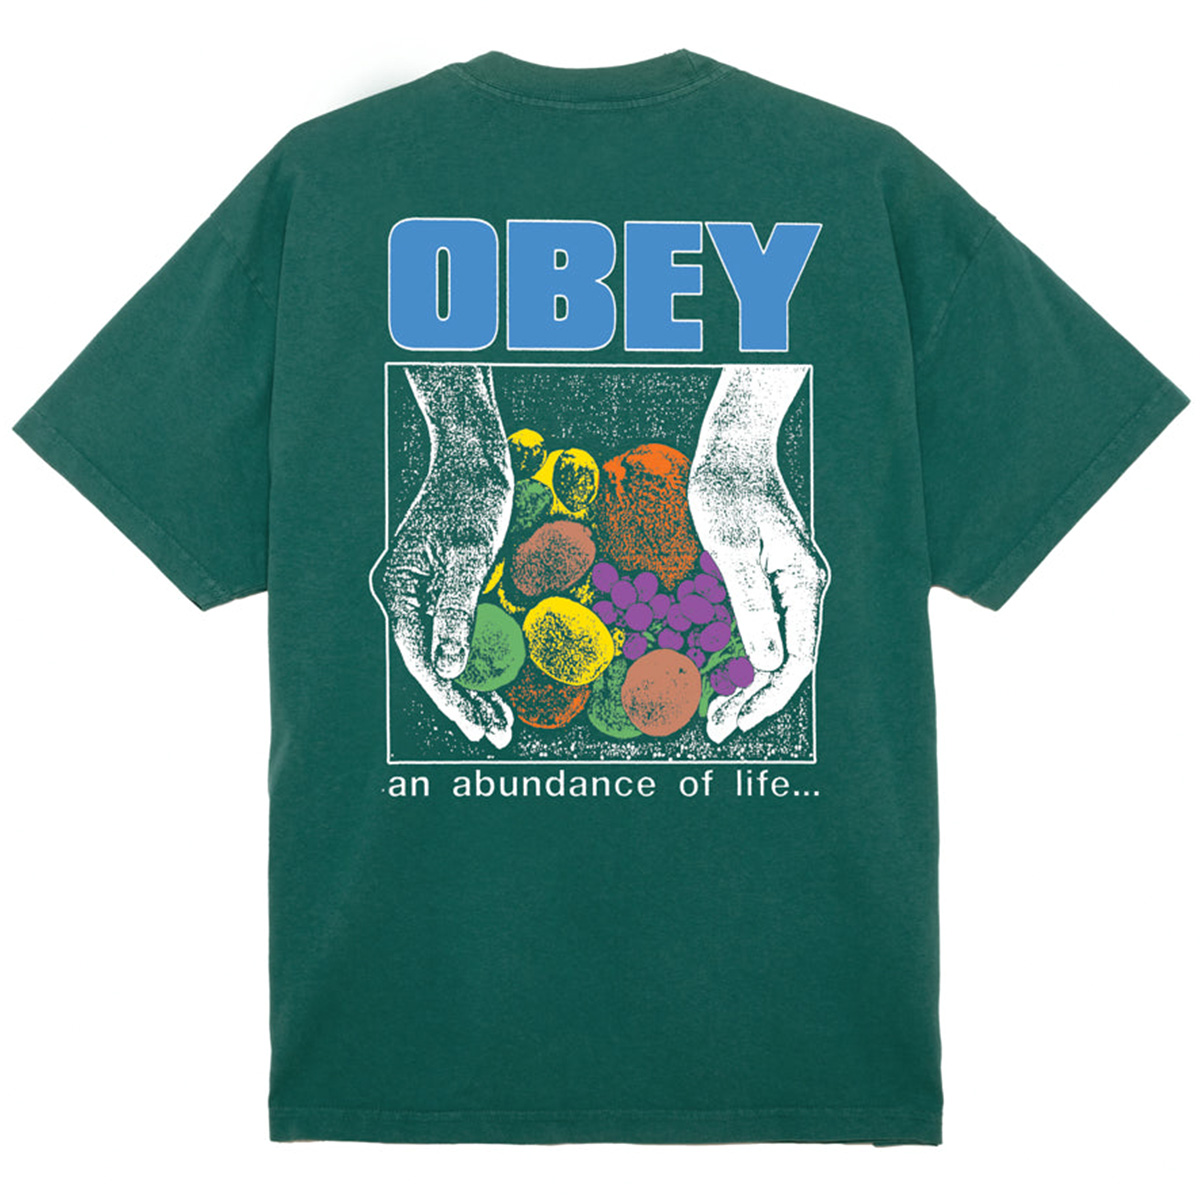 Obey An Abundance Of Life T-Shirt Adventure Green